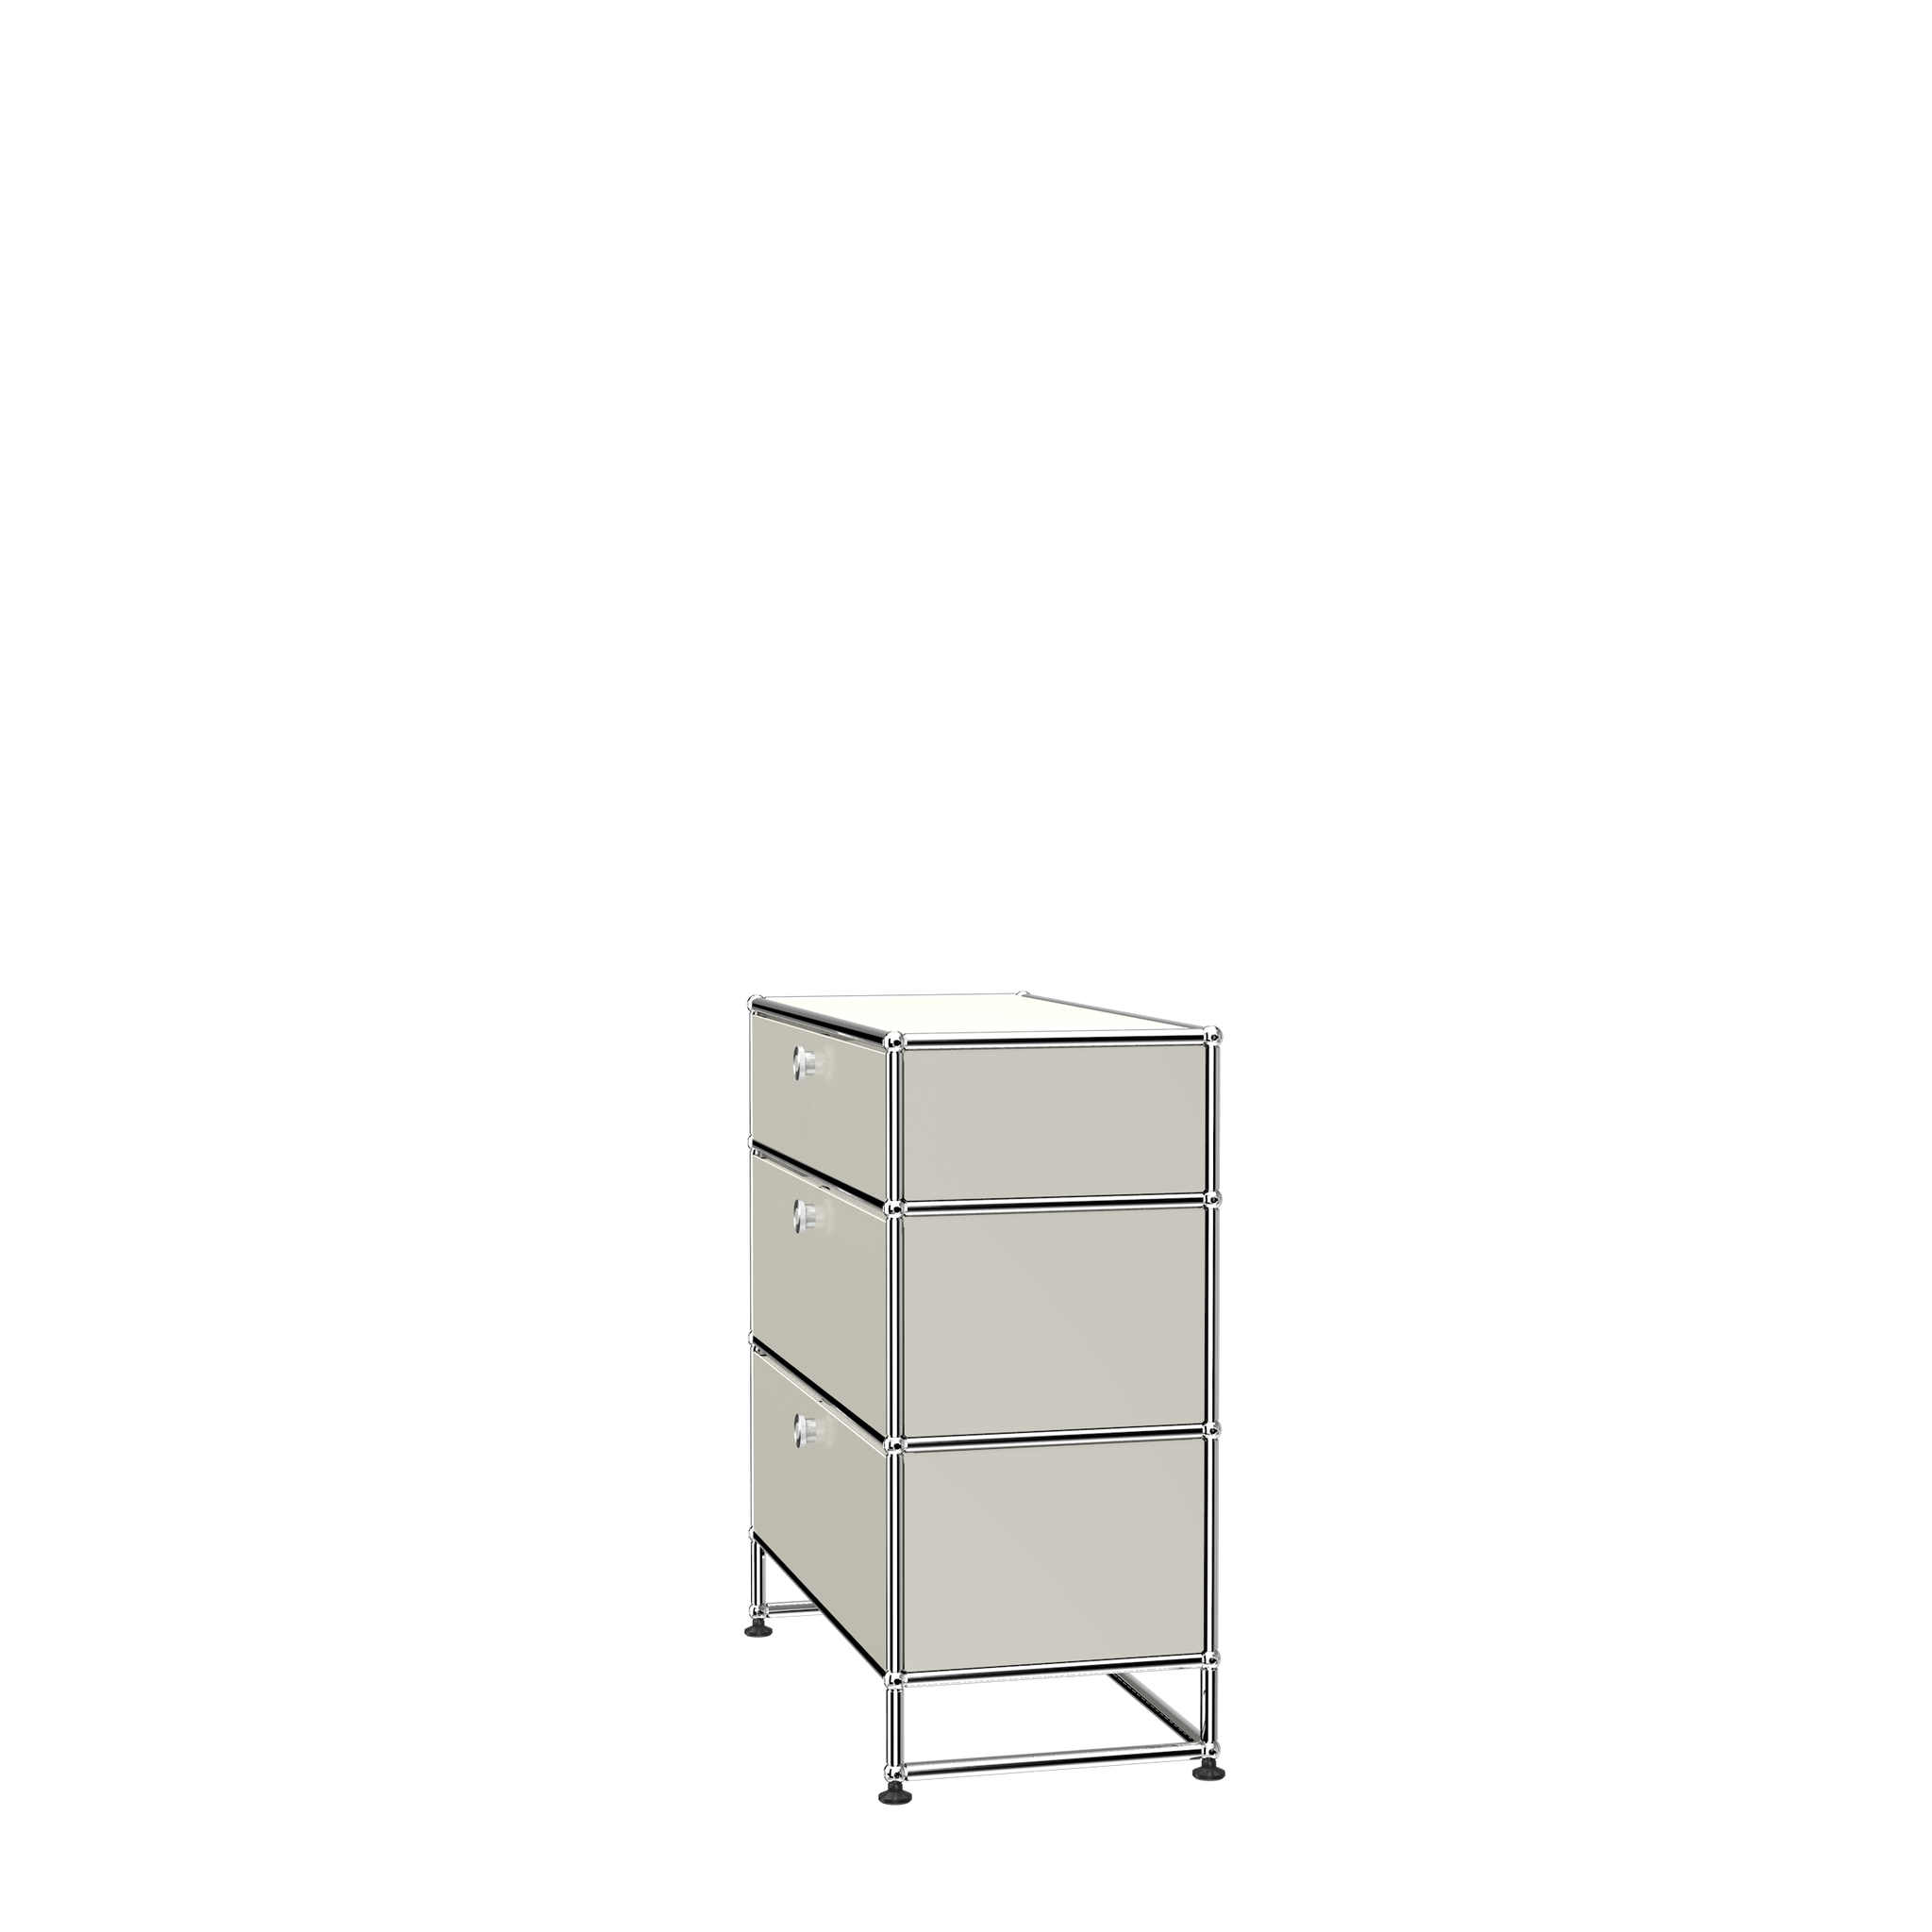 3 Drawer Storage Modular Dresser Side View